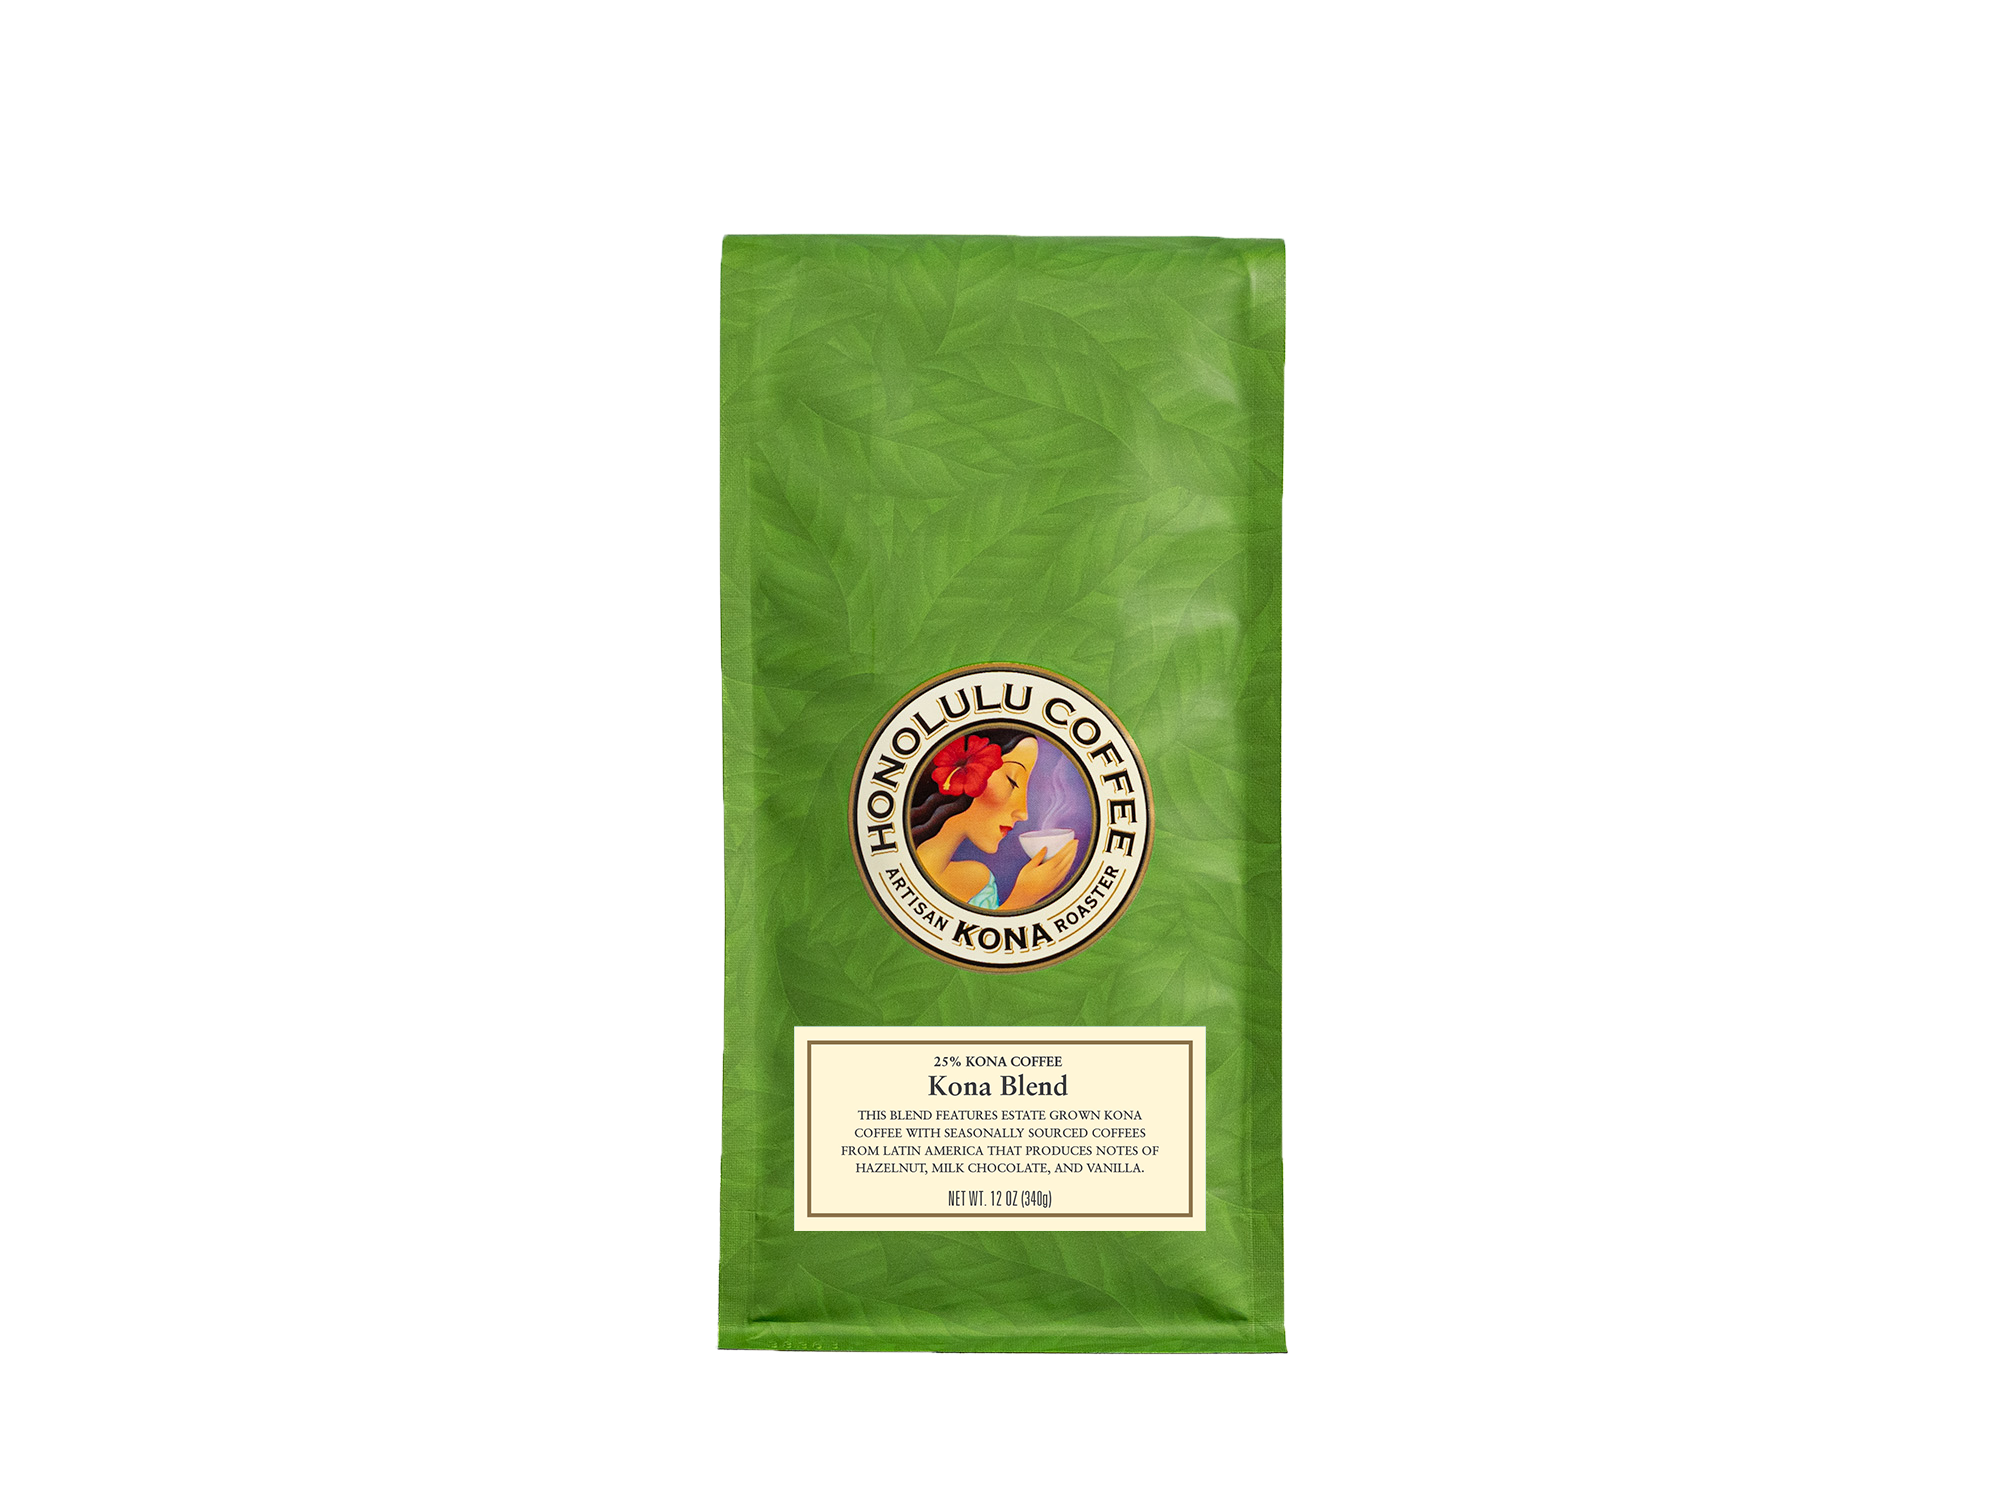 12oz bag of Kona Blend - 25% Kona Coffee